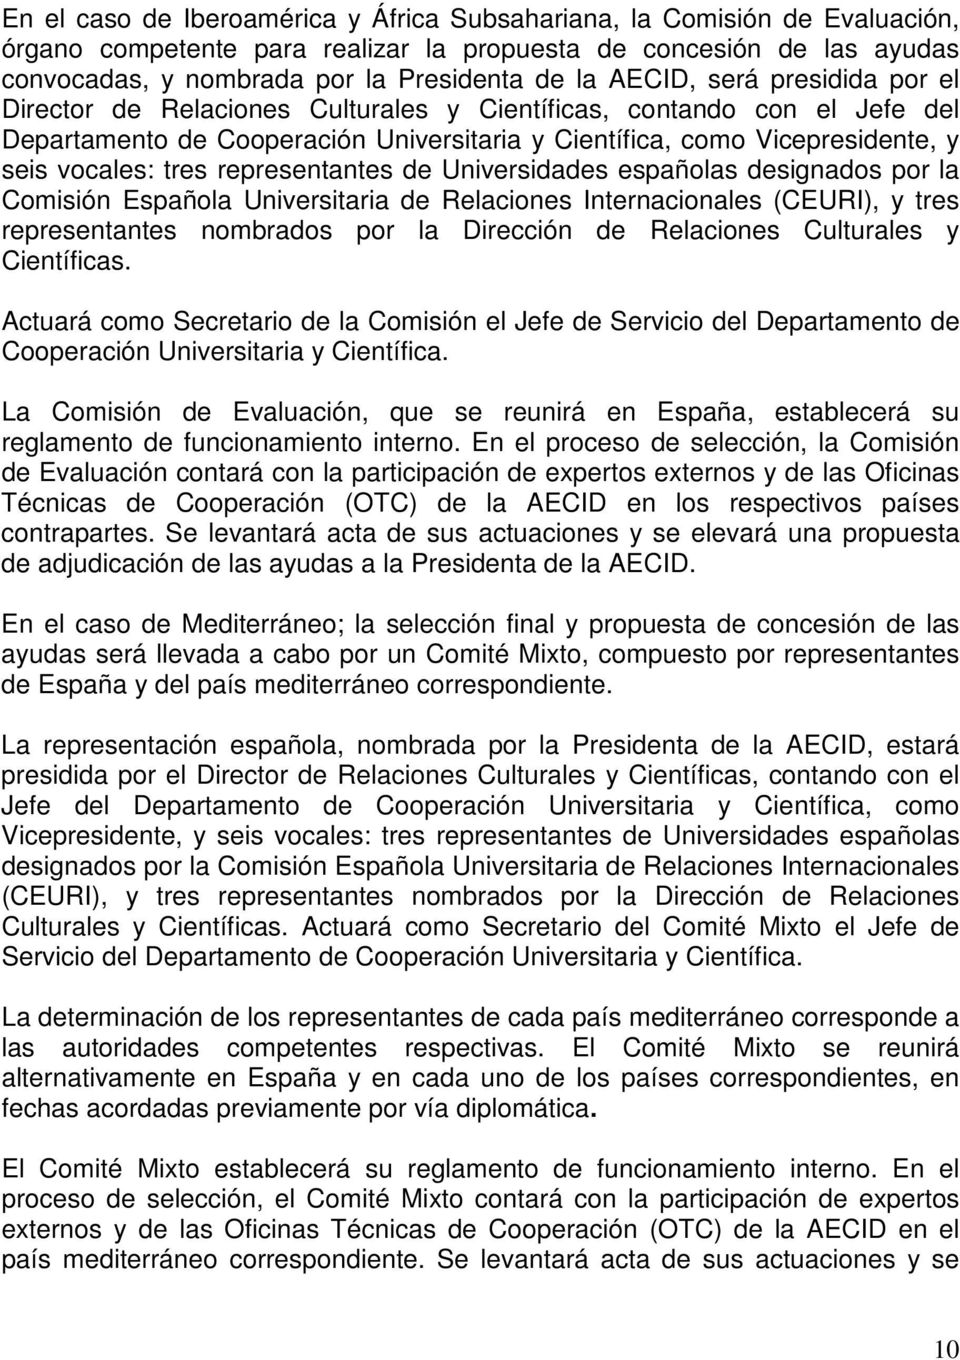 tres representantes de Universidades españolas designados por la Comisión Española Universitaria de Relaciones Internacionales (CEURI), y tres representantes nombrados por la Dirección de Relaciones